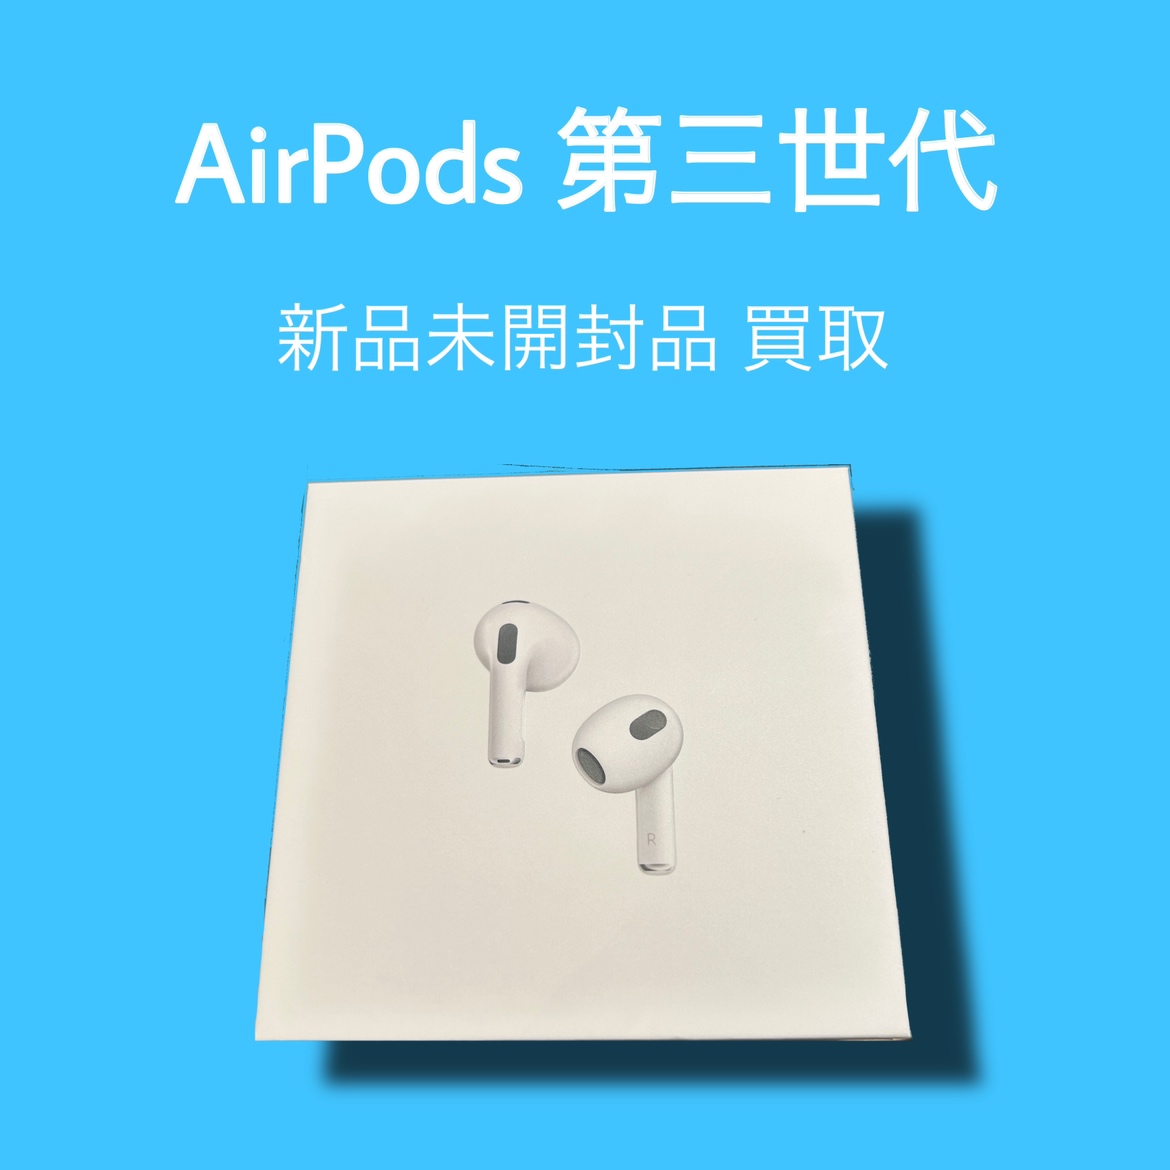 AirPods第三世代・新品未開封品【天神地下街店】